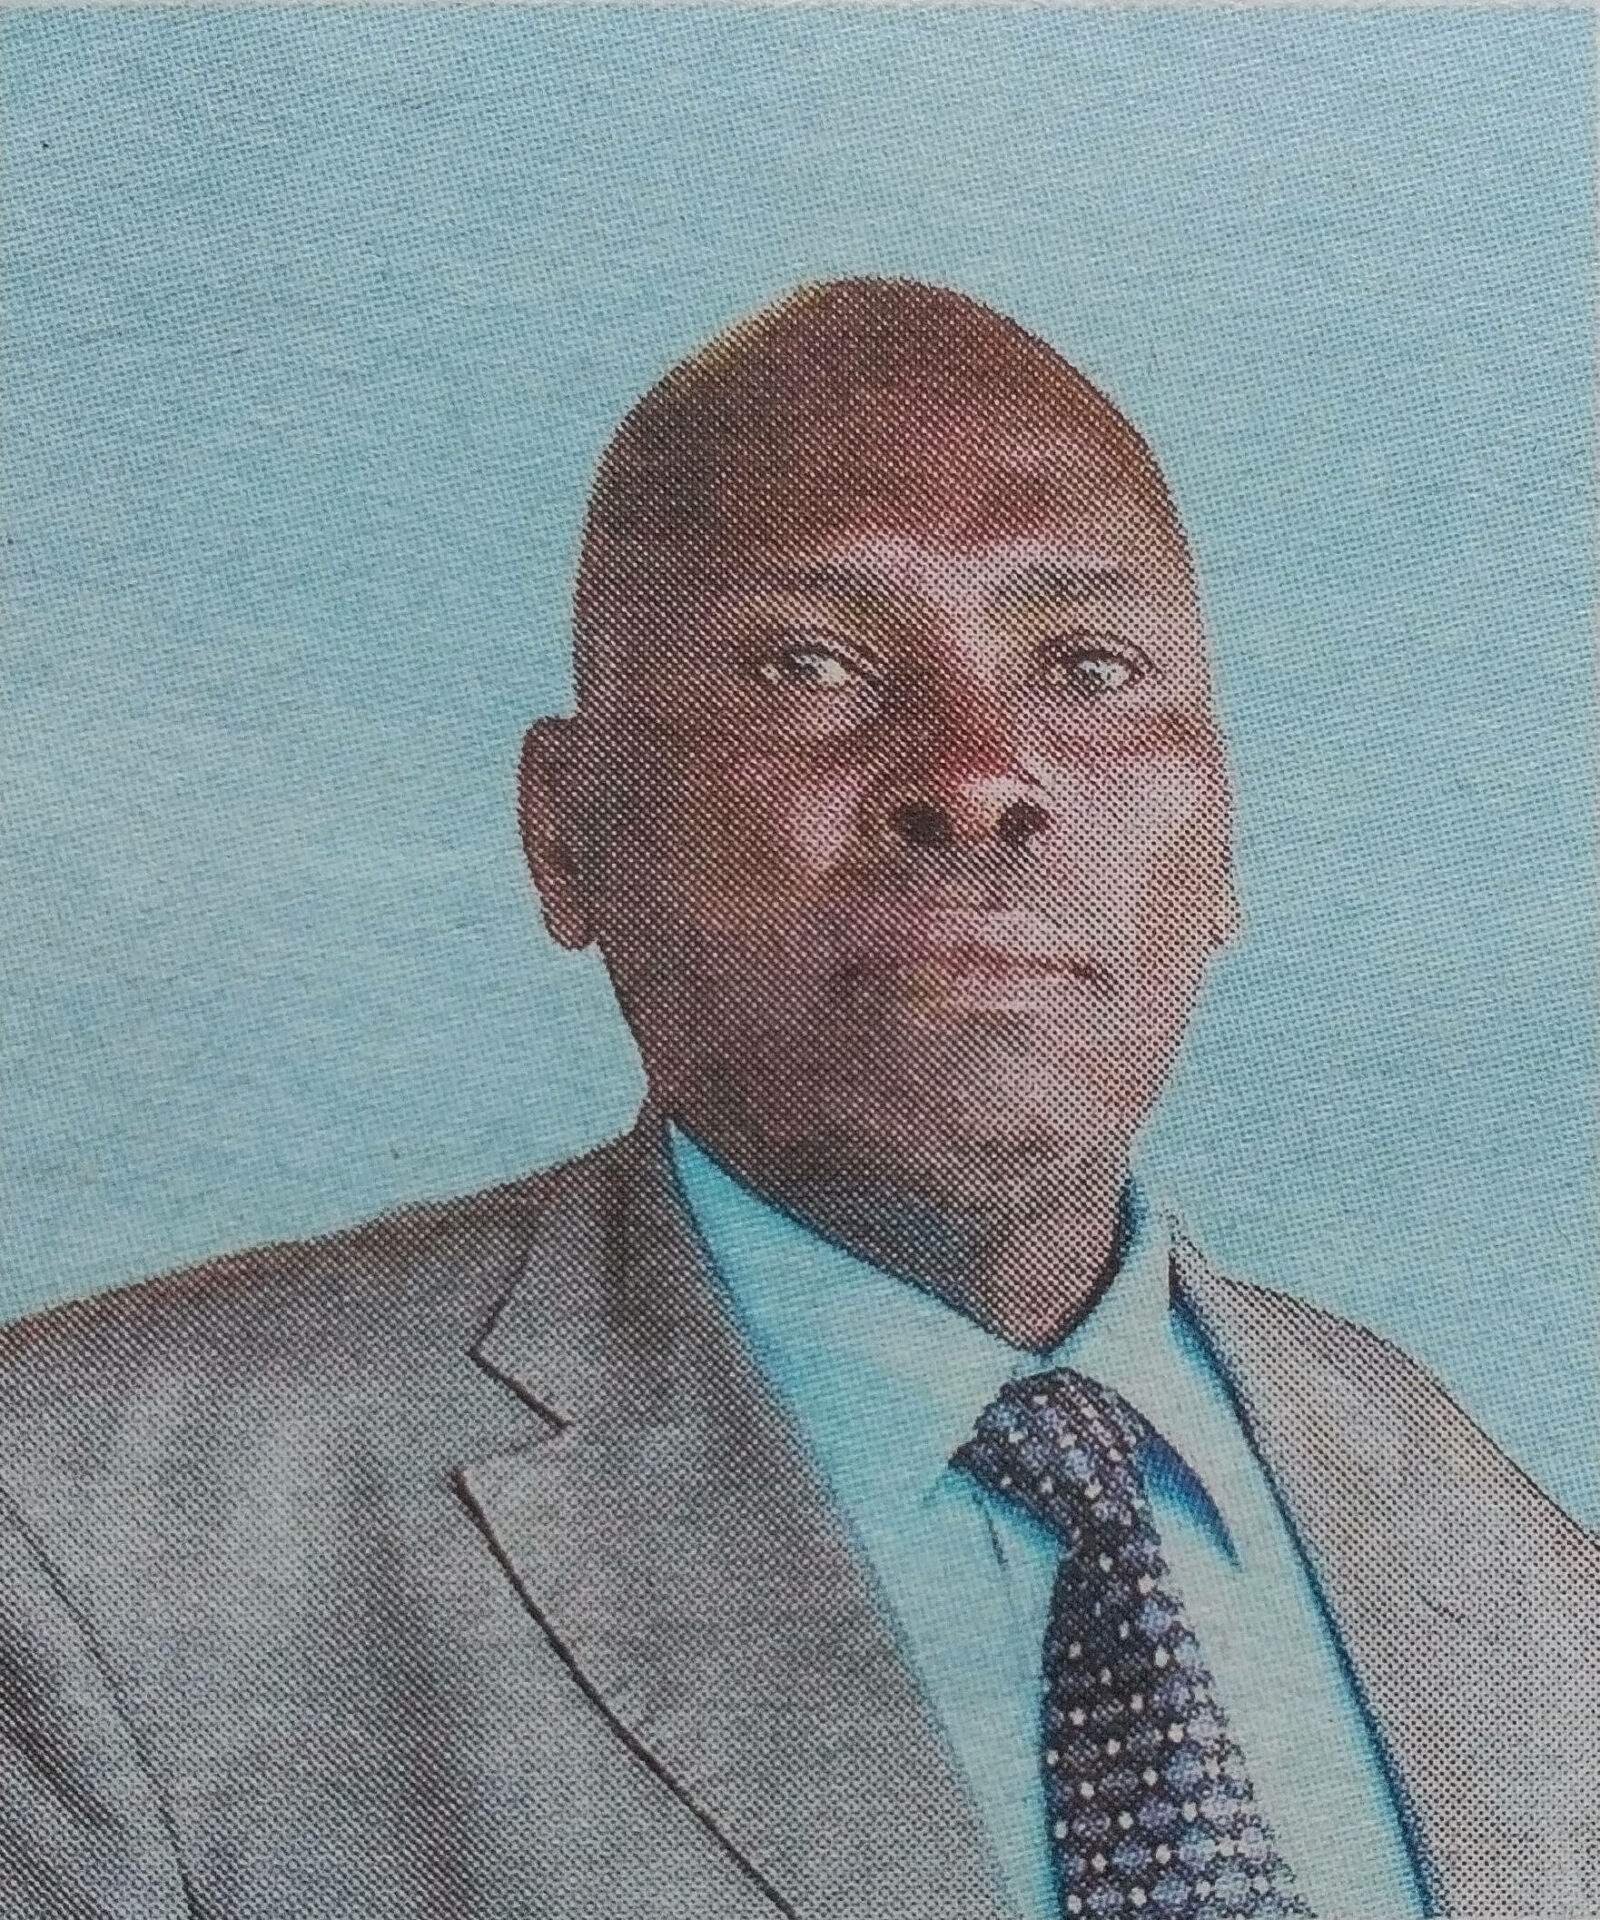 Obituary Image of Joel Njiru Kanyange